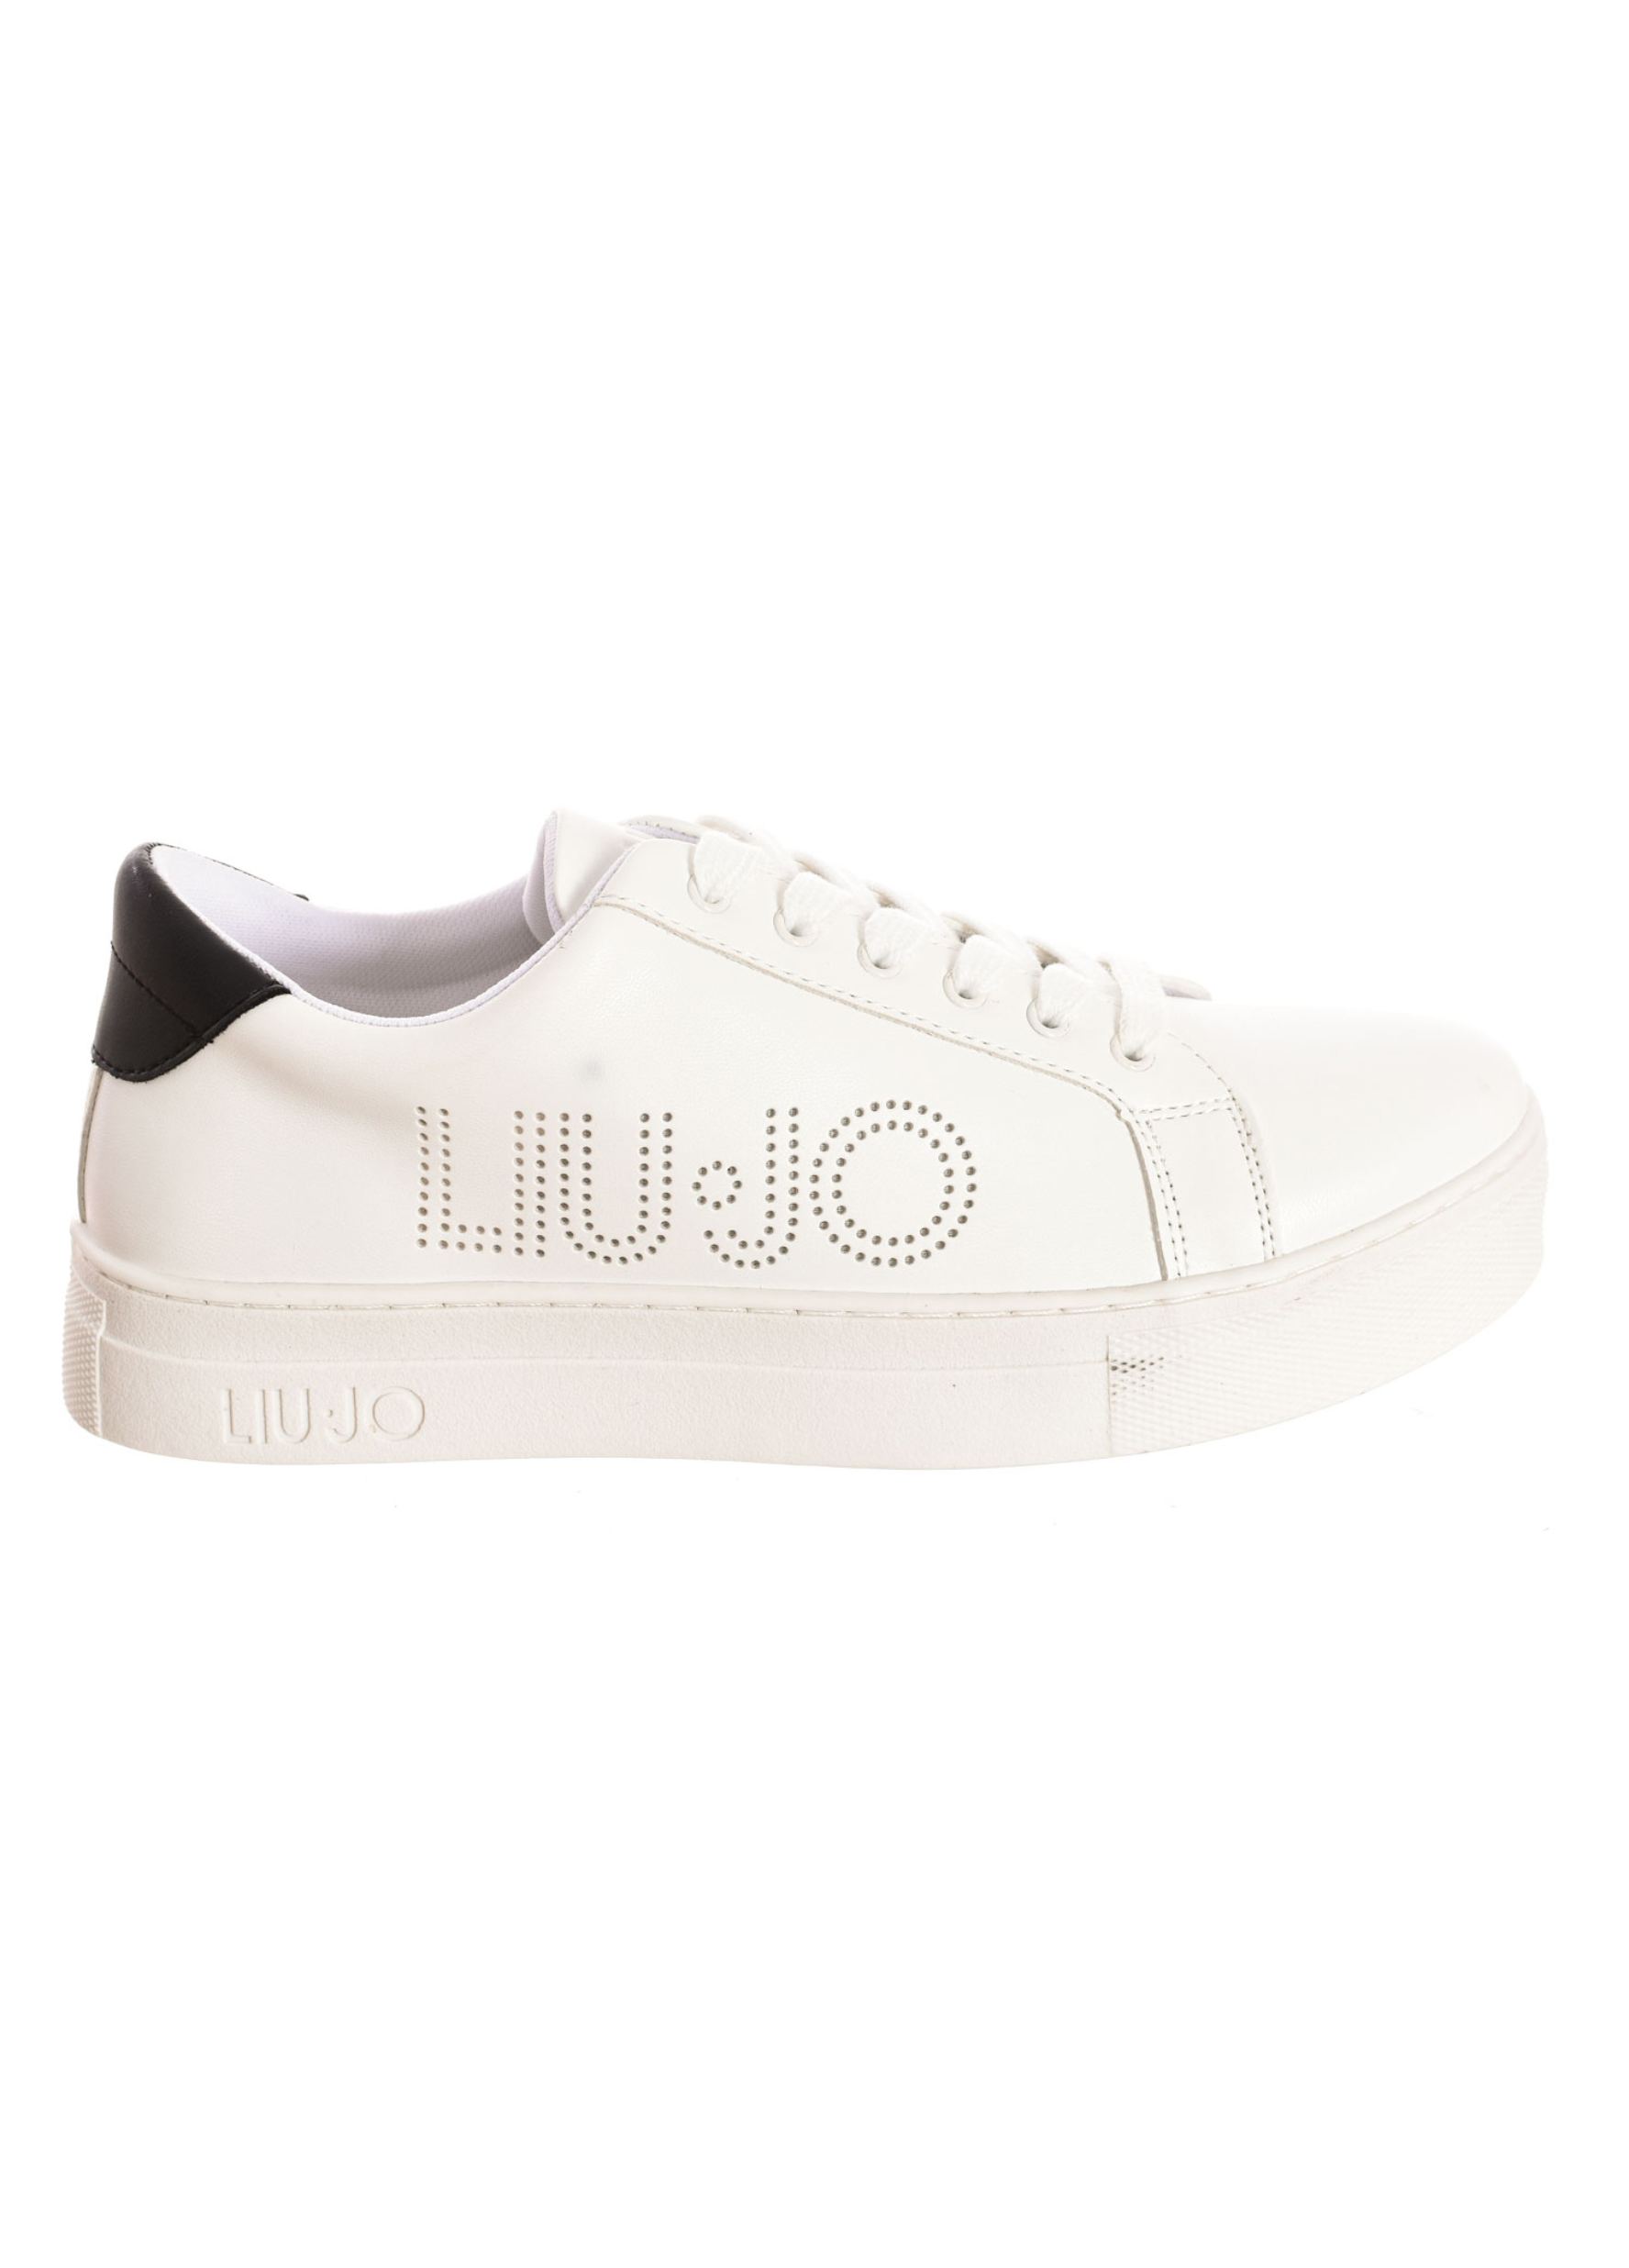 Liu Jo Shoes - Γυναικεία Sneakers Liu Jo Shoes